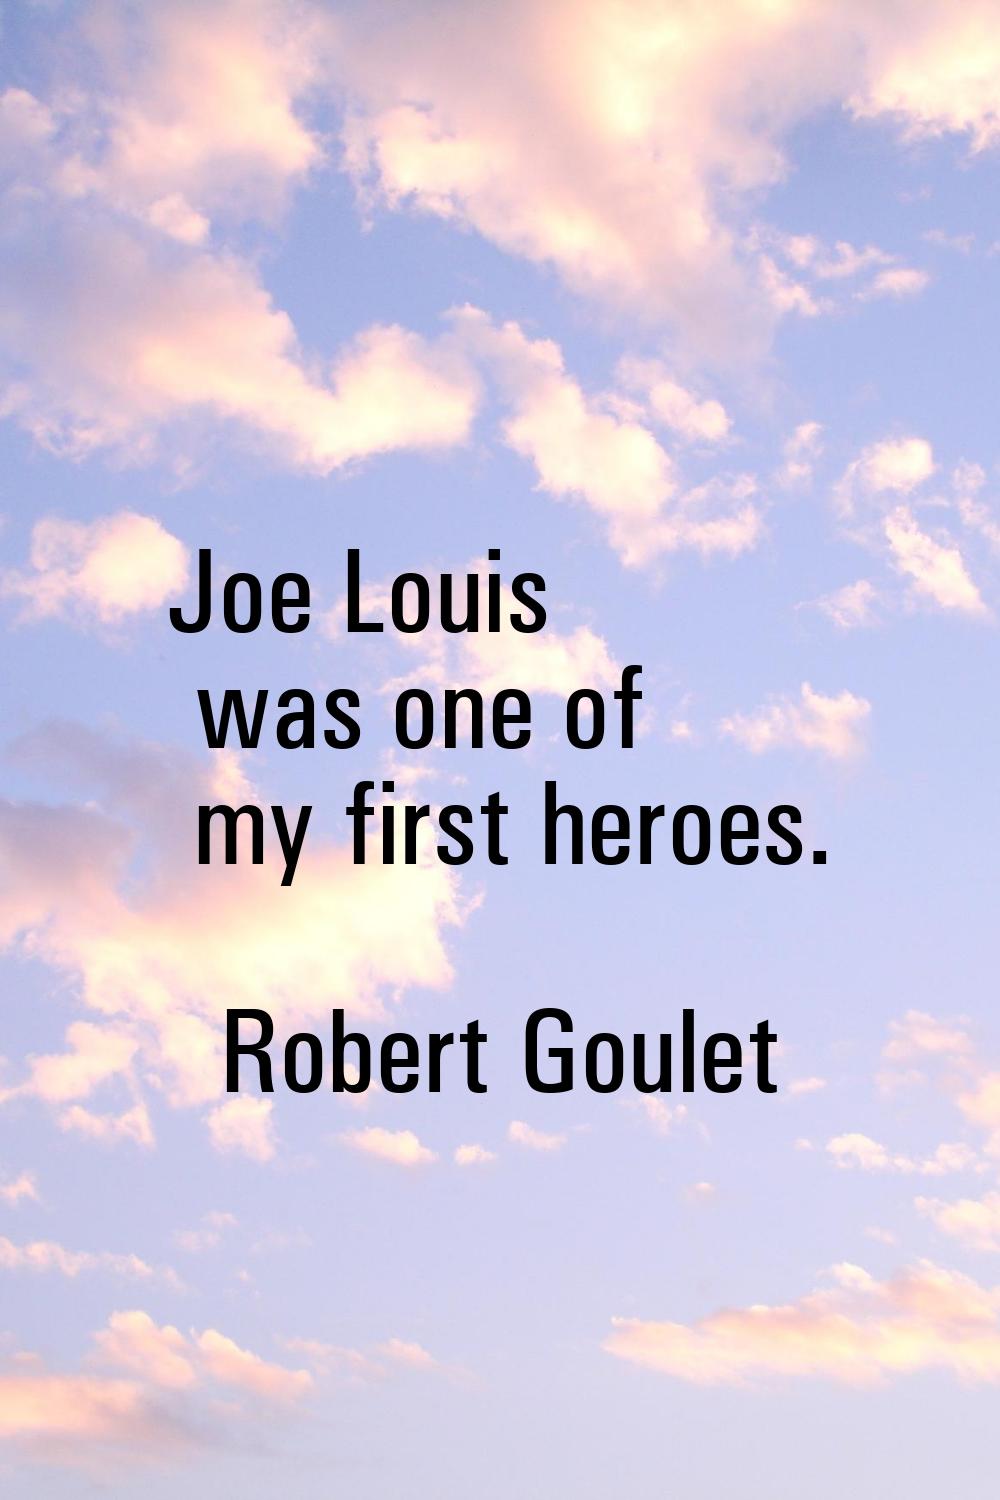 Joe Louis was one of my first heroes.